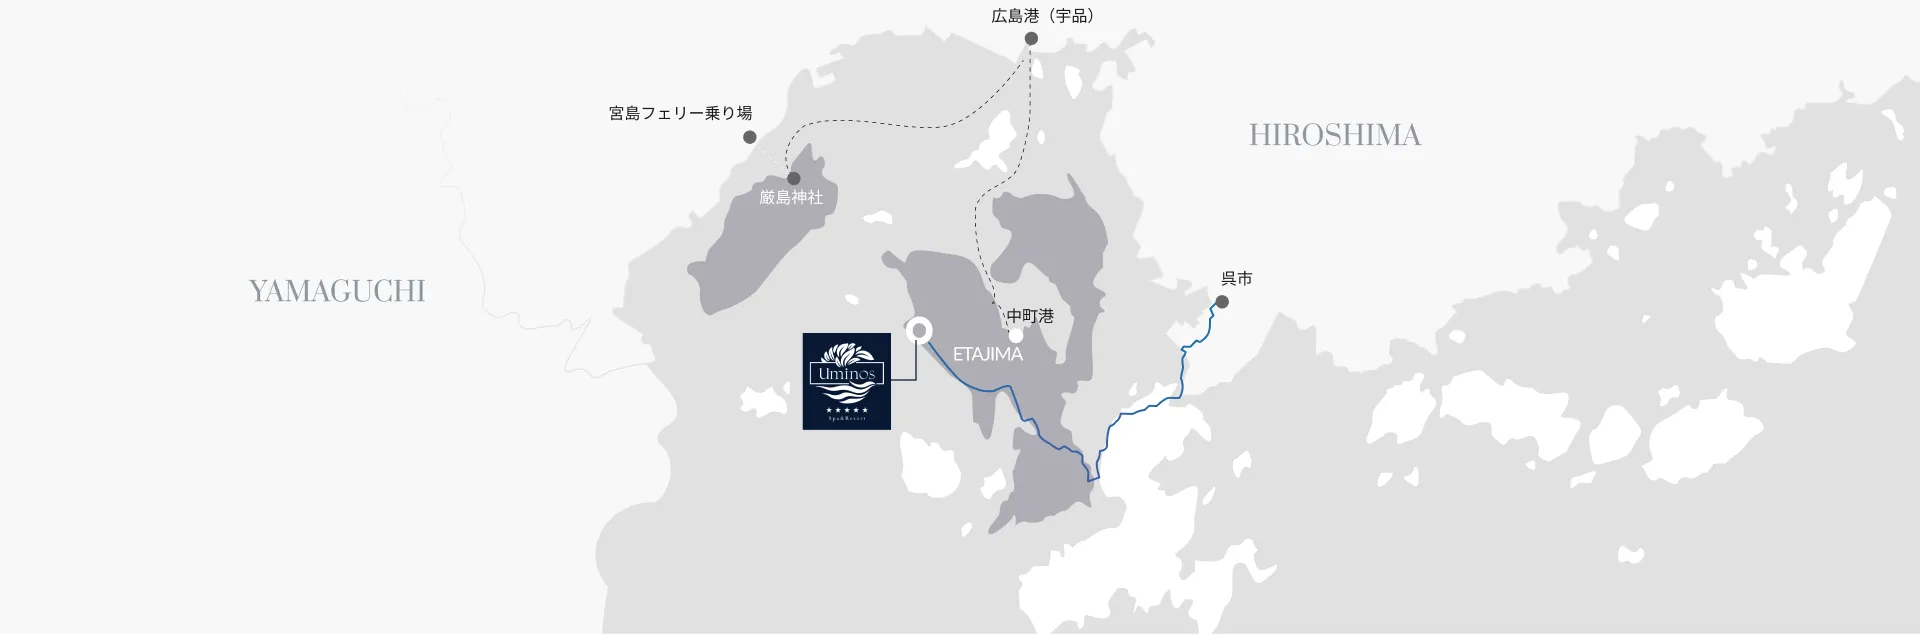 広島県と山口県の地図。江田島周辺のフェリーや港の位置を示しています。主要な場所として、宮島フェリー乗り場、厳島神社、広島港（宇品）、中町港、呉市が表示されています。画像の中央にはホテルのロゴ「Uminos by the Sea」が配置されており、そのホテルの場所も示されています。